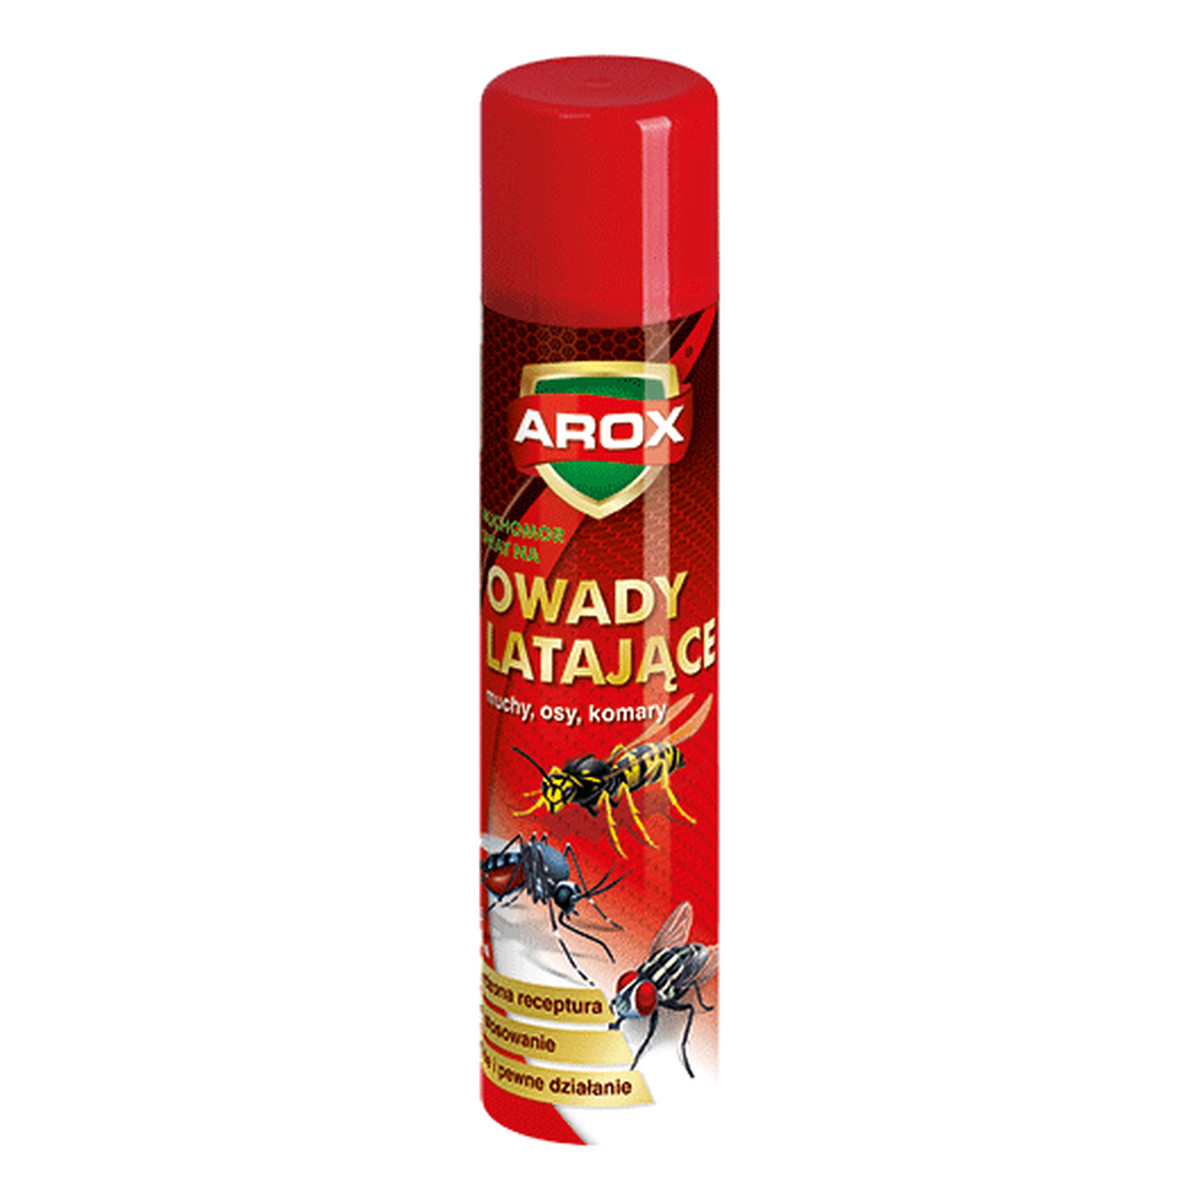 Arox Muchomor Spray na owady latające 400ml